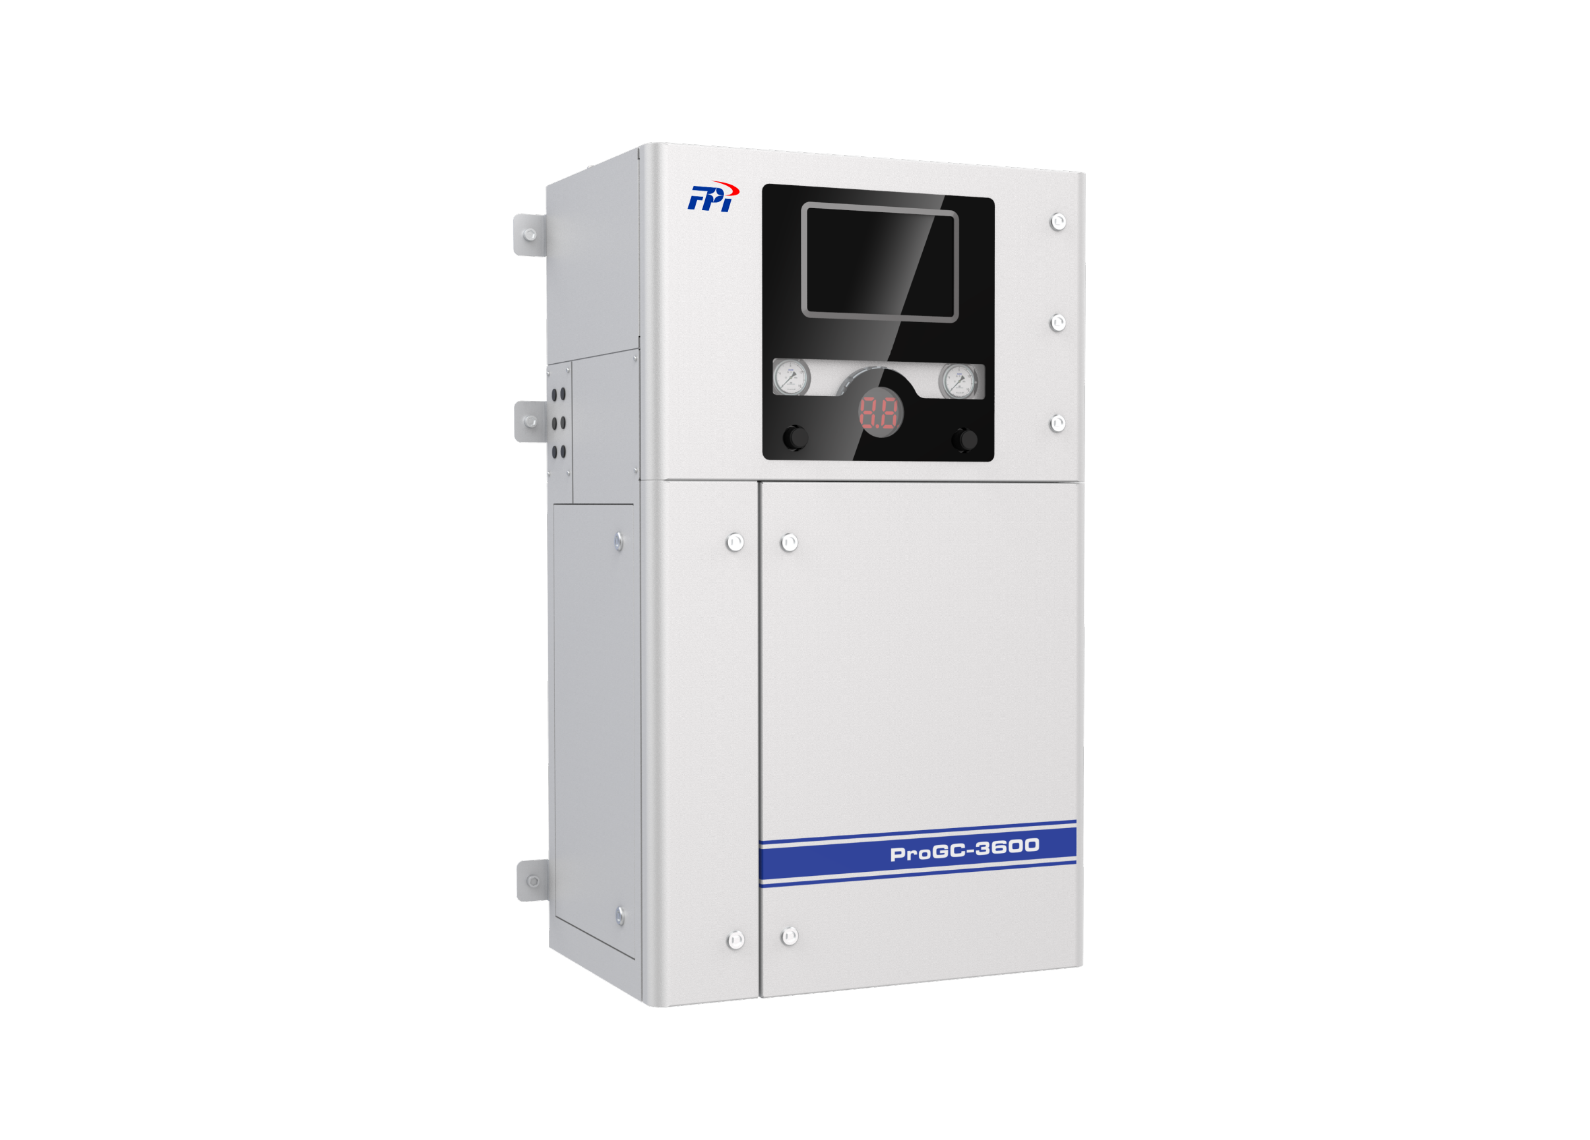 ProGC-3600 Industrial Online Chromatography Analyzer